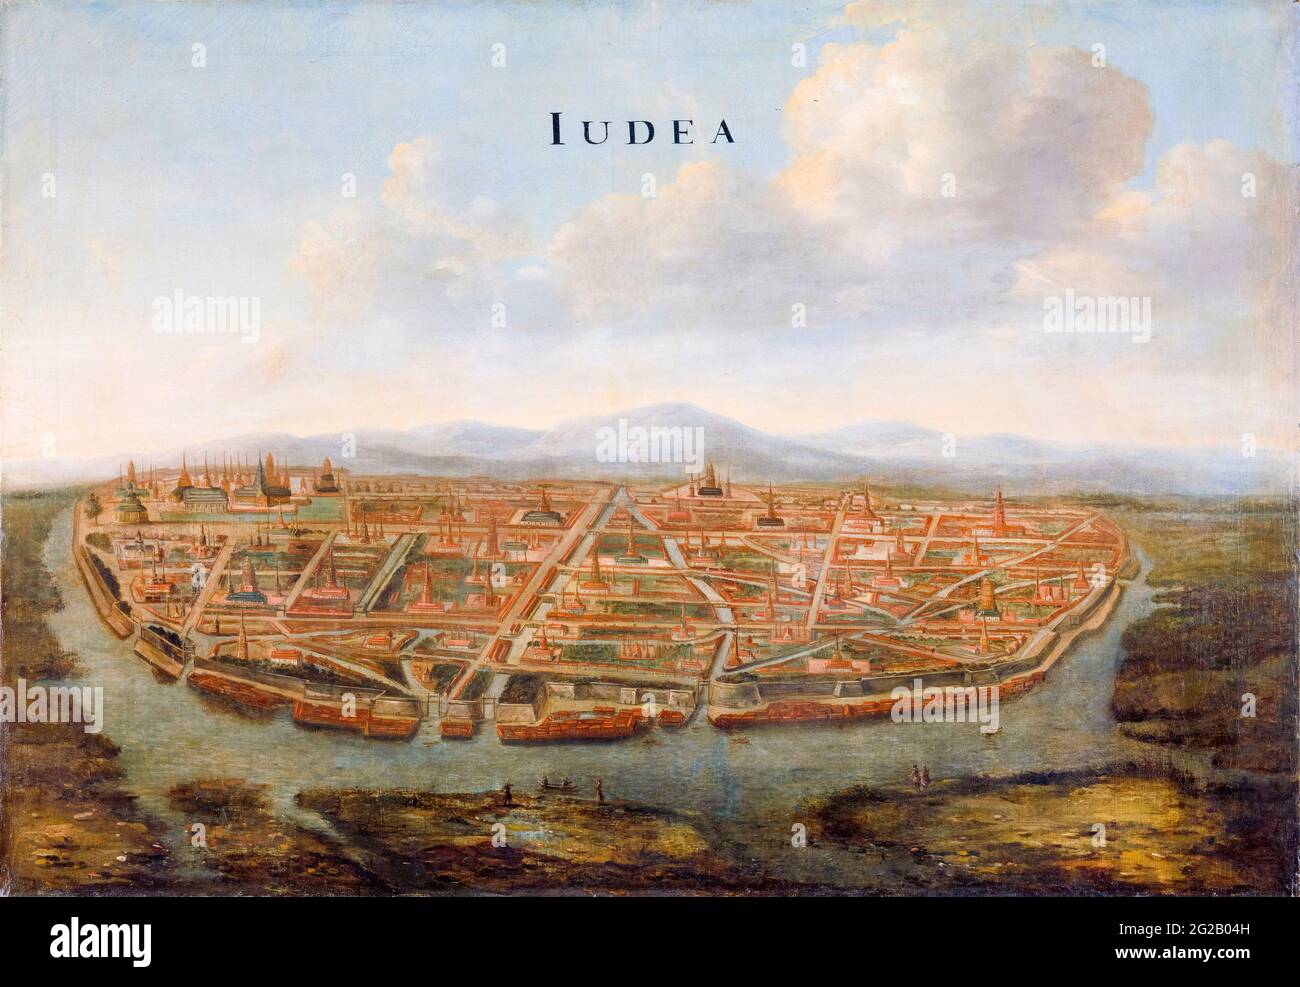 17 ° secolo vista del porto e della città di Judea (Ayutthaya), la capitale del Regno del Siam (Thailandia), paesaggio dipinto di Johannes Vinckboons, 1662-1663 Foto Stock